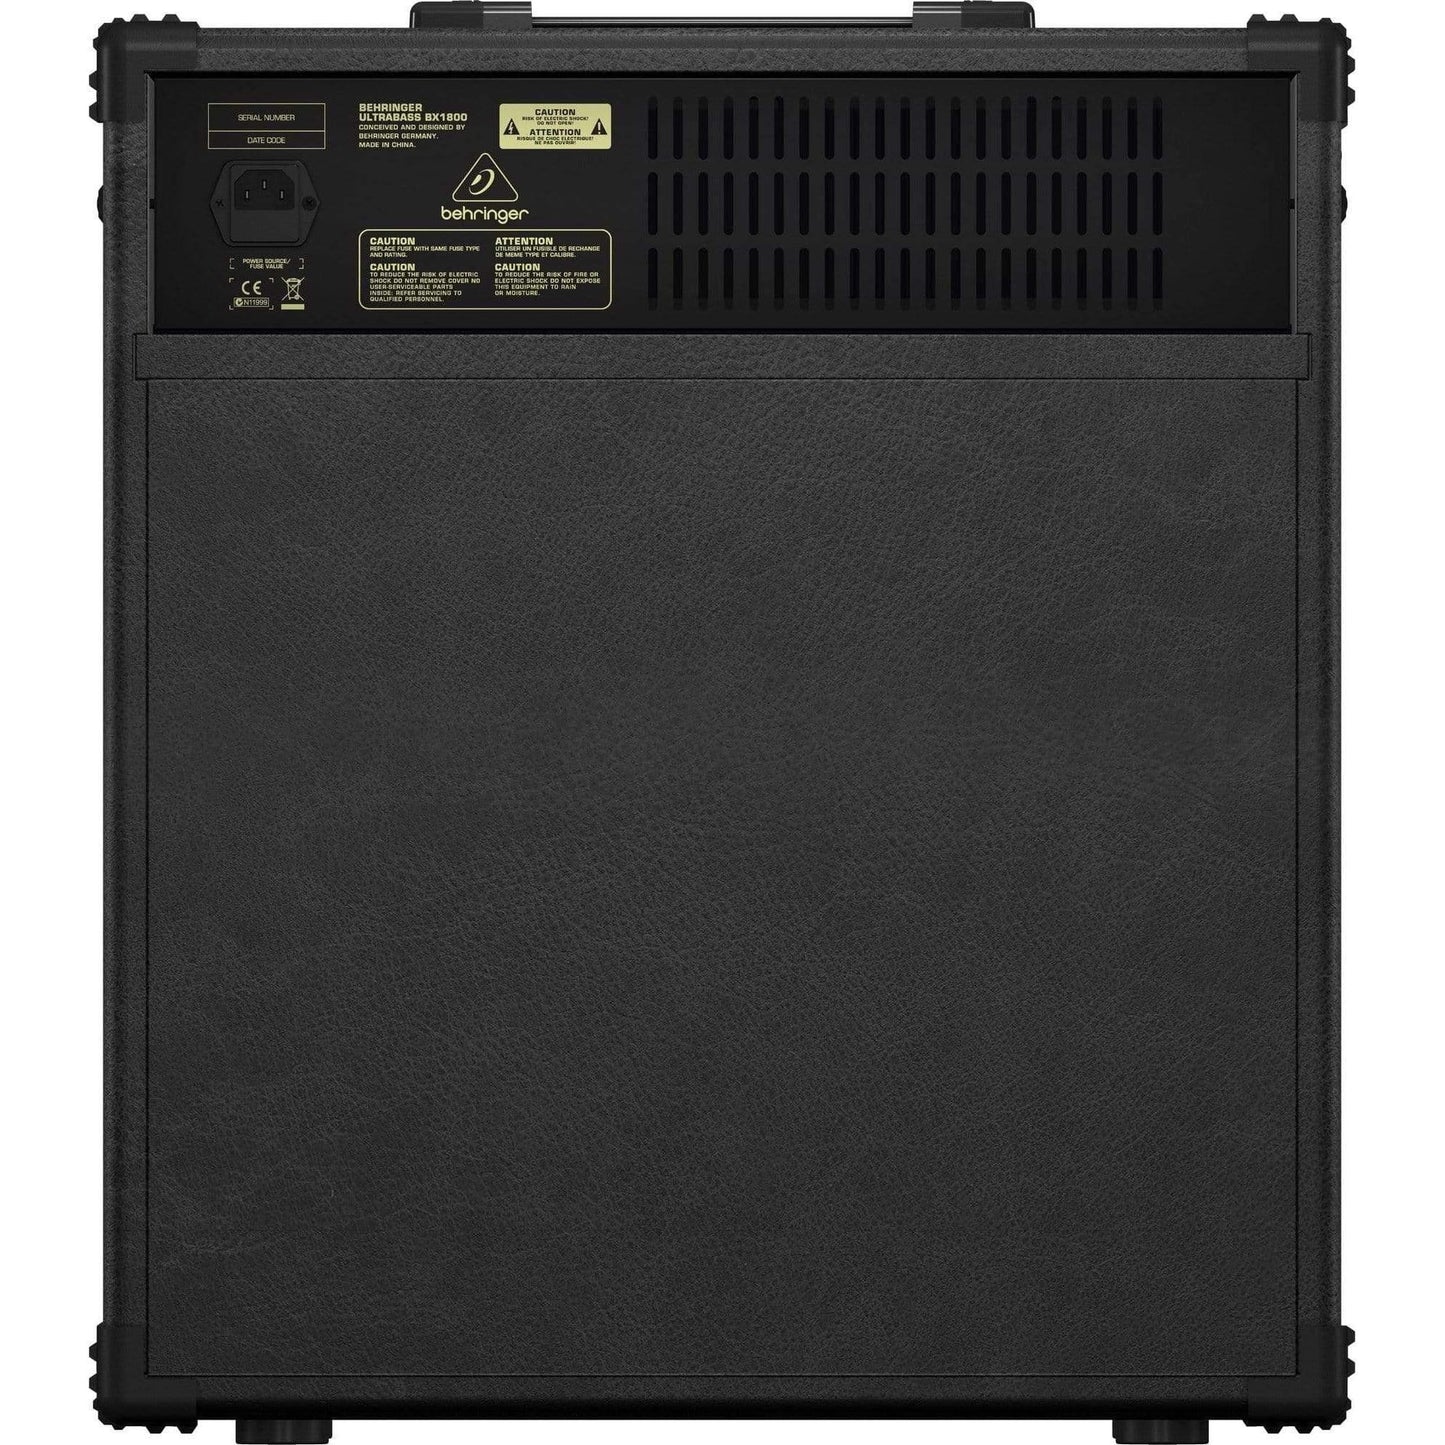 Behringer BX1800 Ultrabass Combo Bass Amplifier